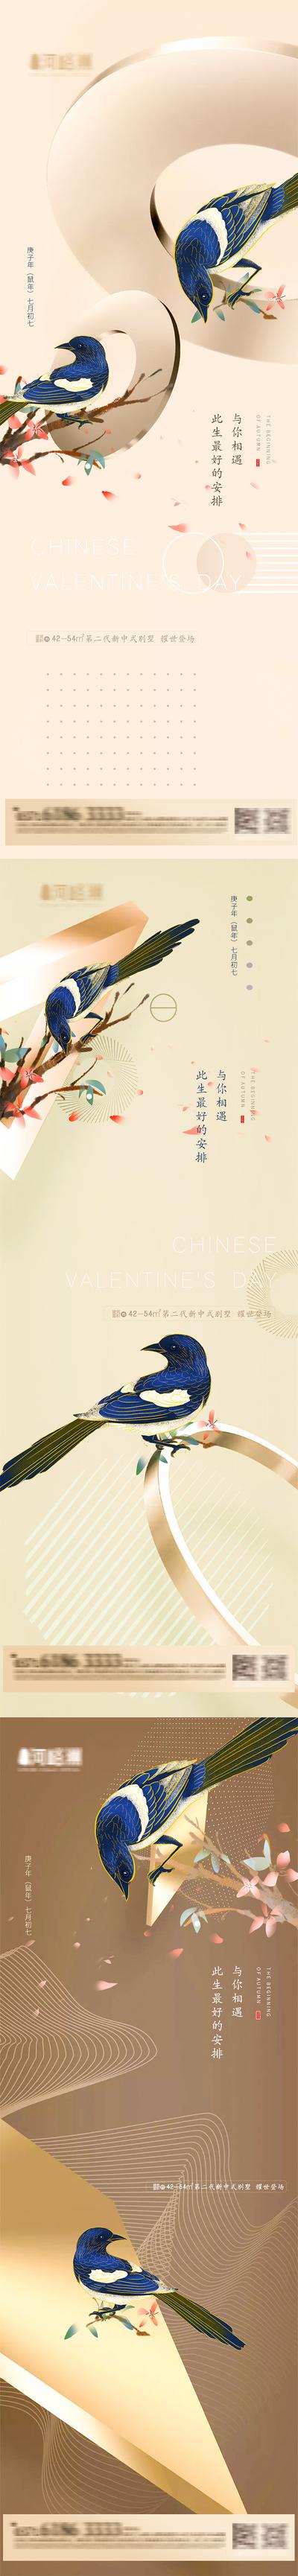 南门网 海报 房地产 中国传统节日 七夕 情人节 喜鹊 新古典 连理枝系列